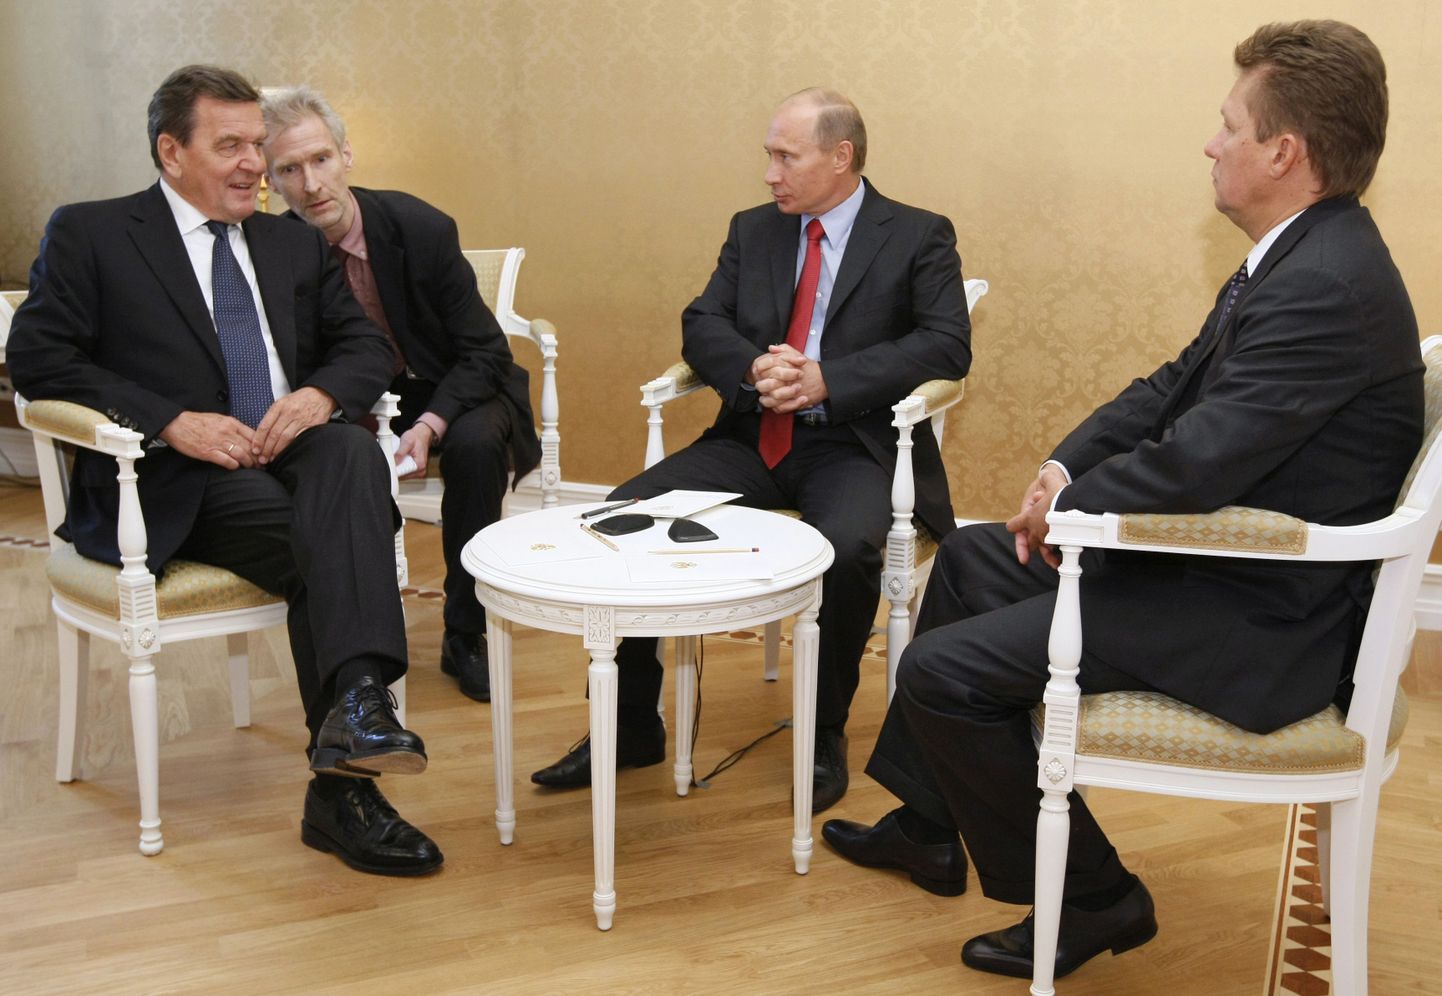 Vene Föderatsiooni peaminister Vladimir Putin pidamas nõu Gazpromi tegevjuhi Aleksei Milleri ja aktsionäride nõukogu esimehe Gerhard Schröderiga.